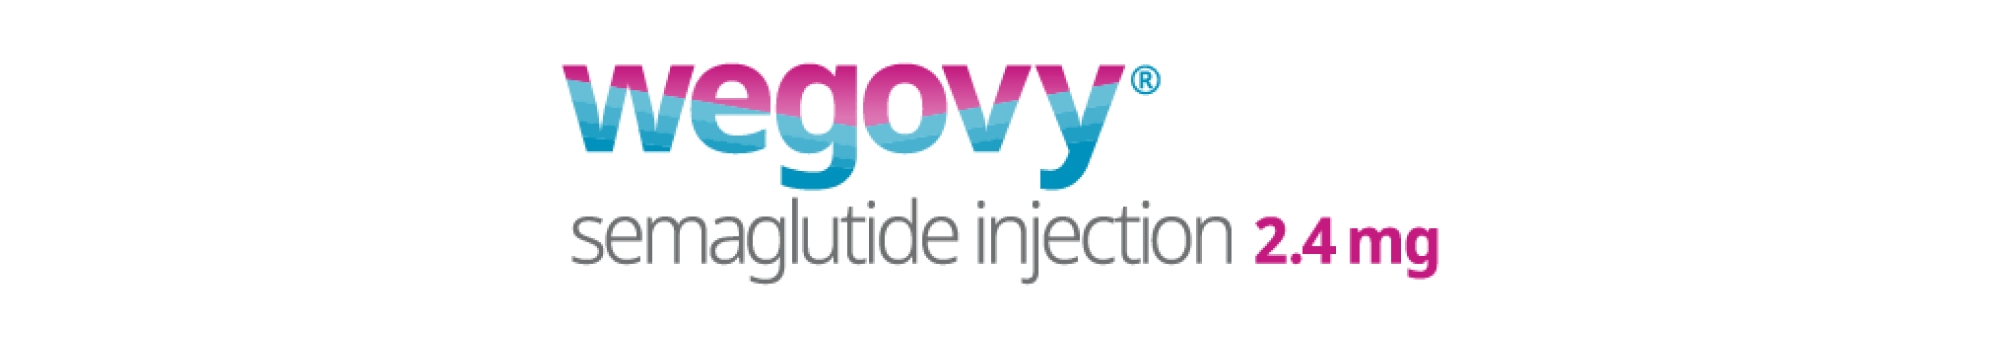 wegovy logo